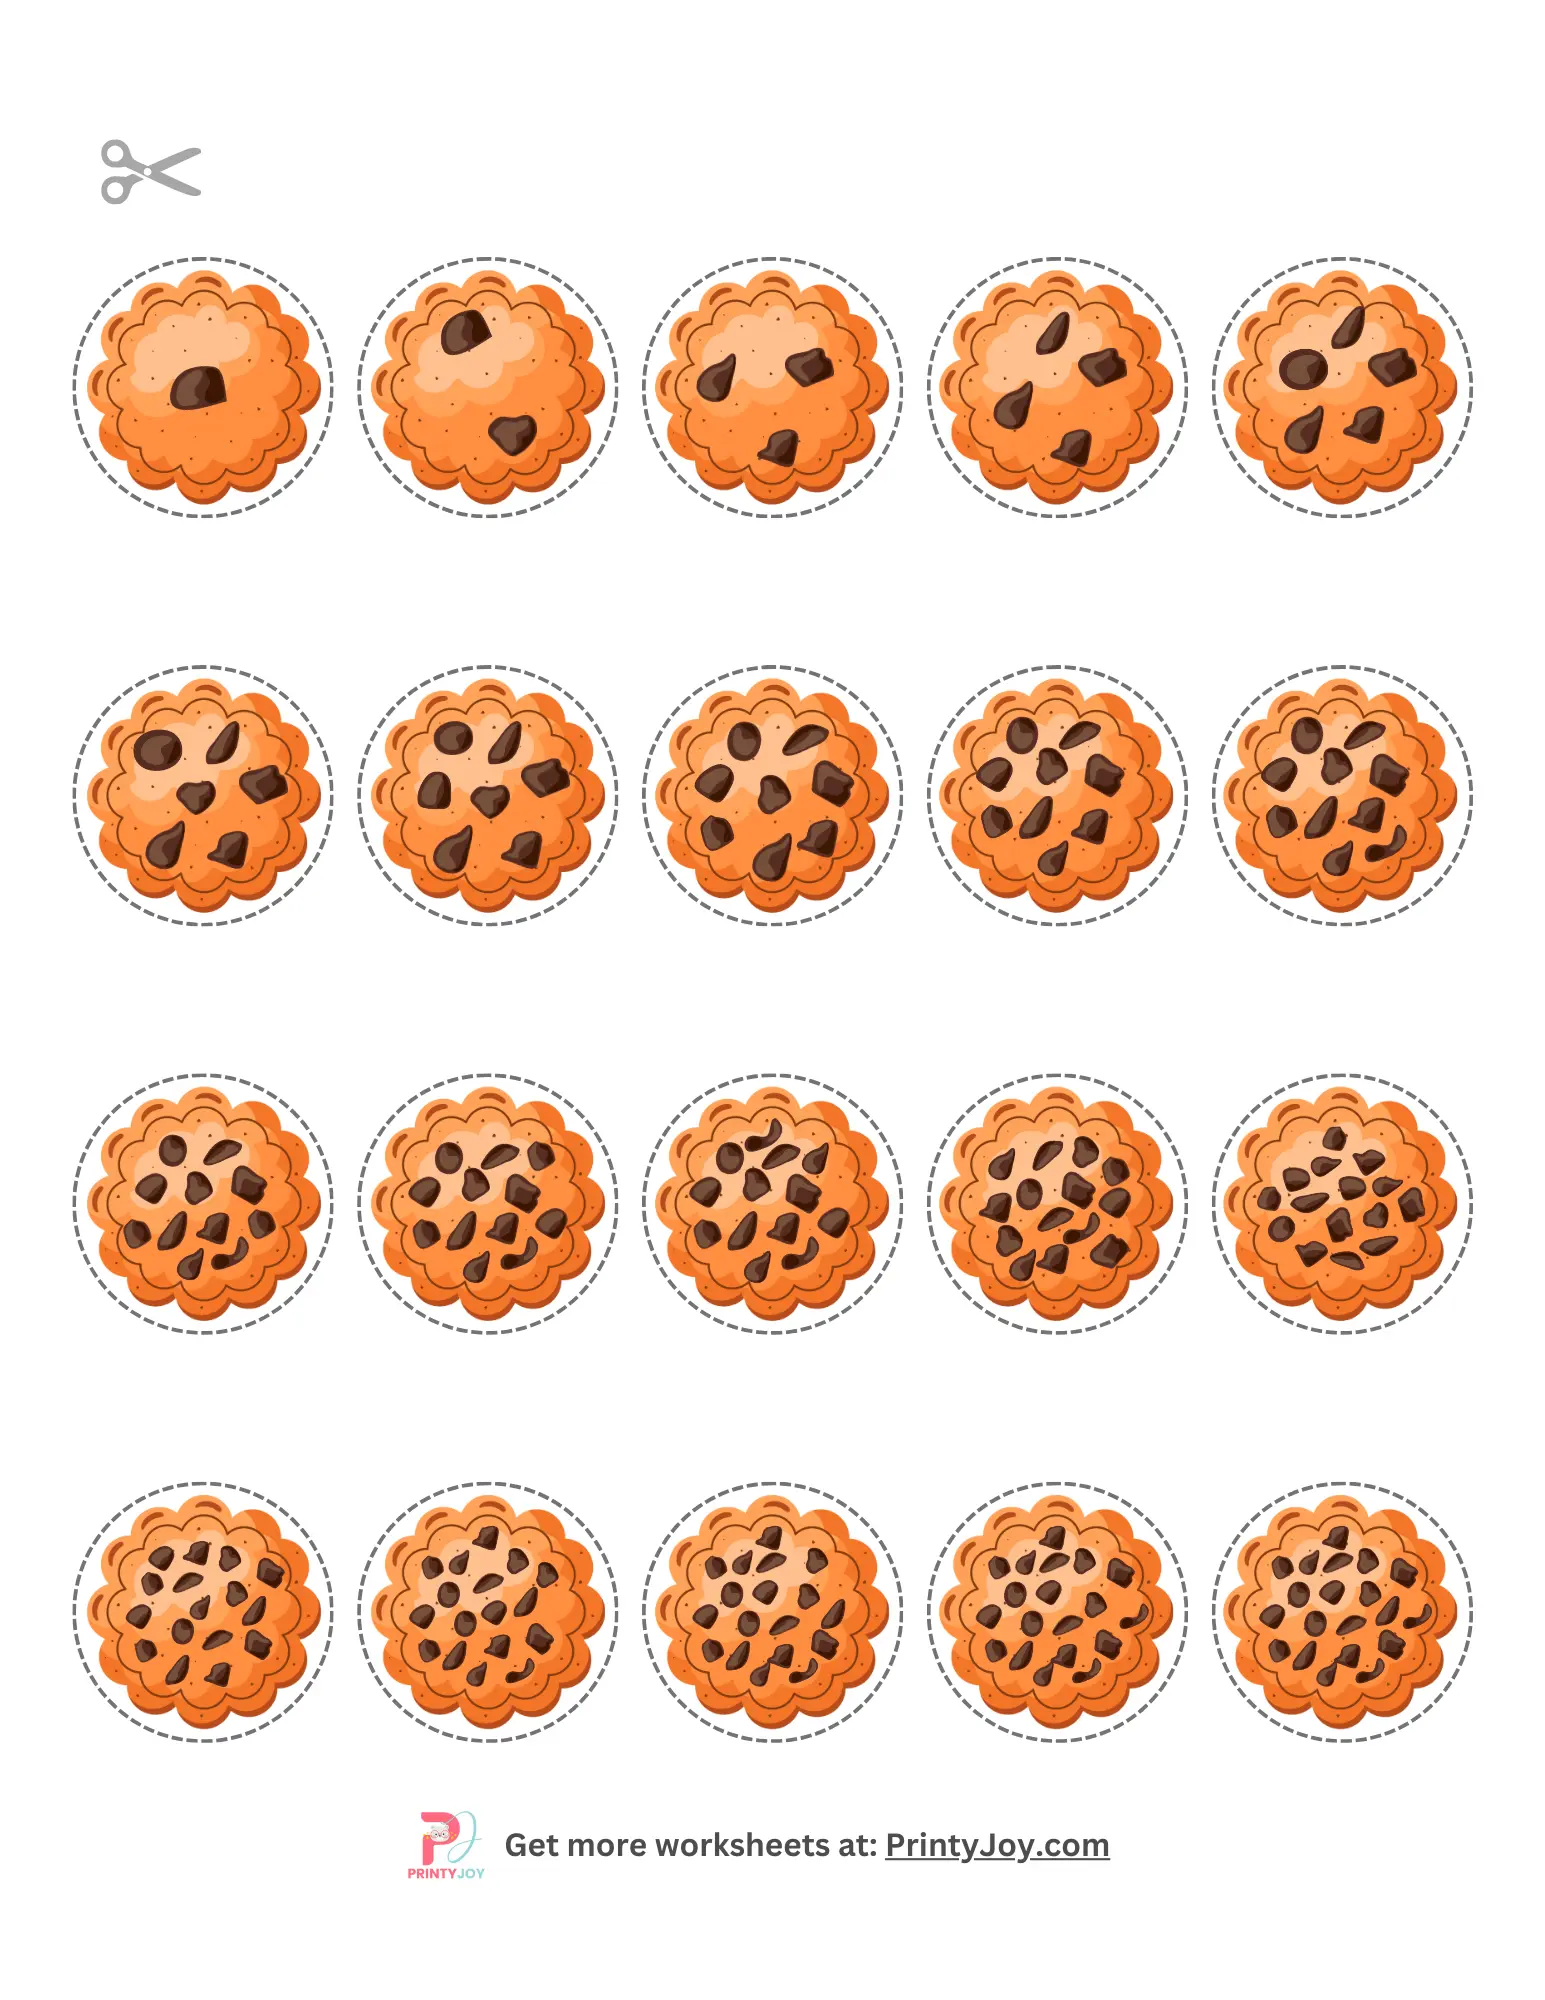 Cookie Jar Counting Worksheets pdf download